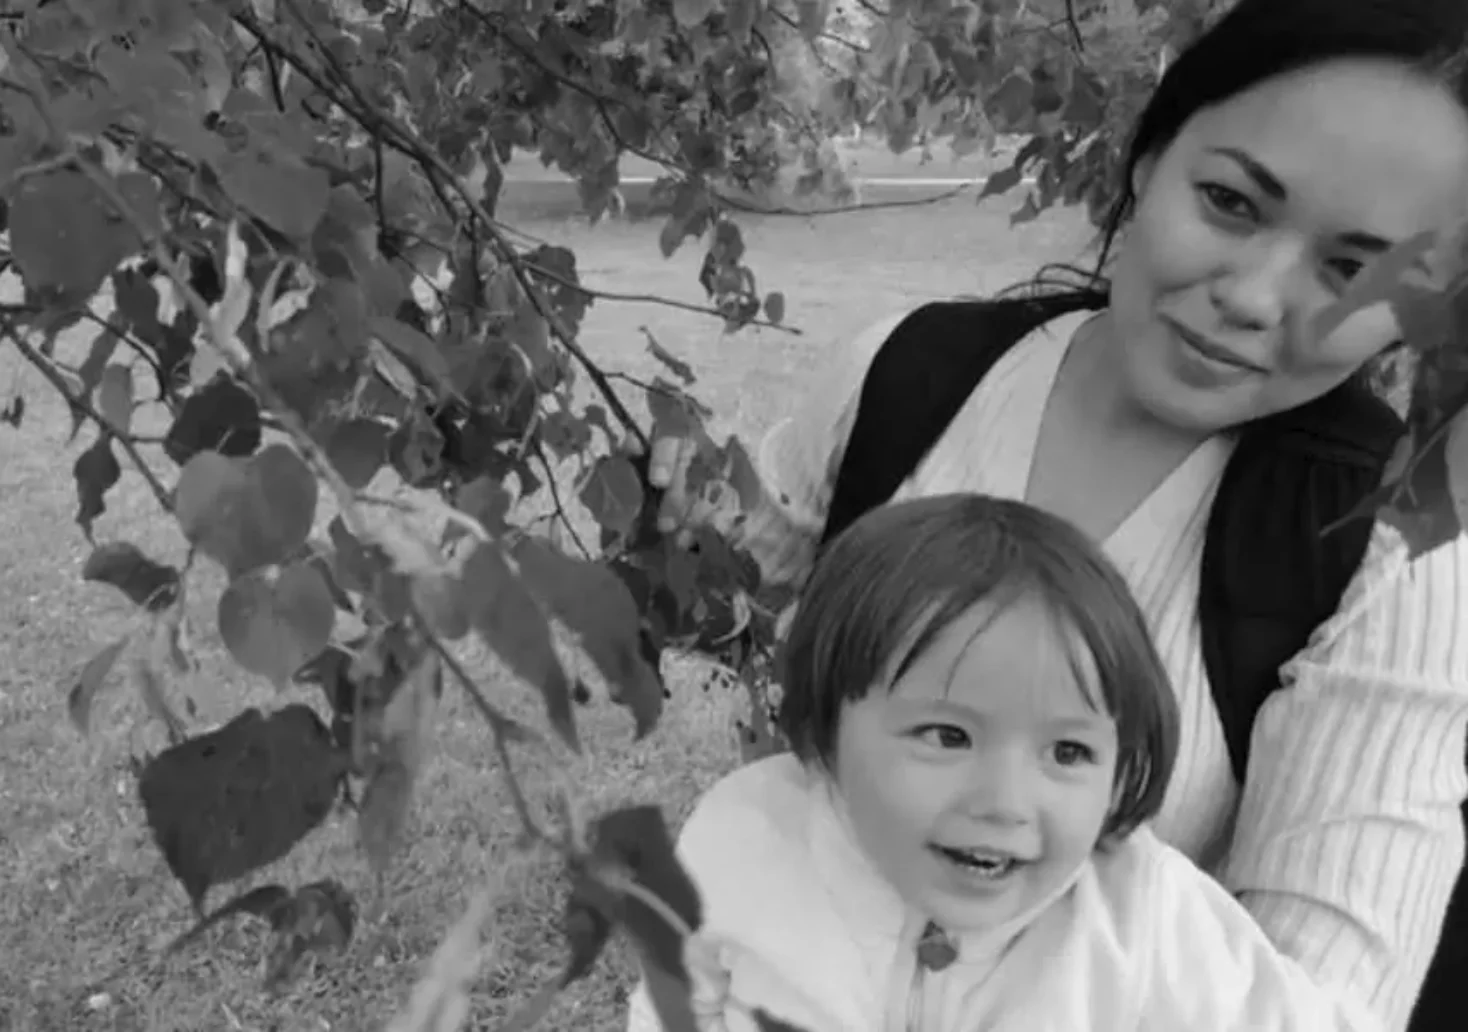 Foto in Beitrag von 5min.at: Zu sehen ist Yulia mit ihrer Tochter in einem Garten. Das Foto ist in schwarz-weiß dargestellt, da Yulia kürzlich verstorben ist.